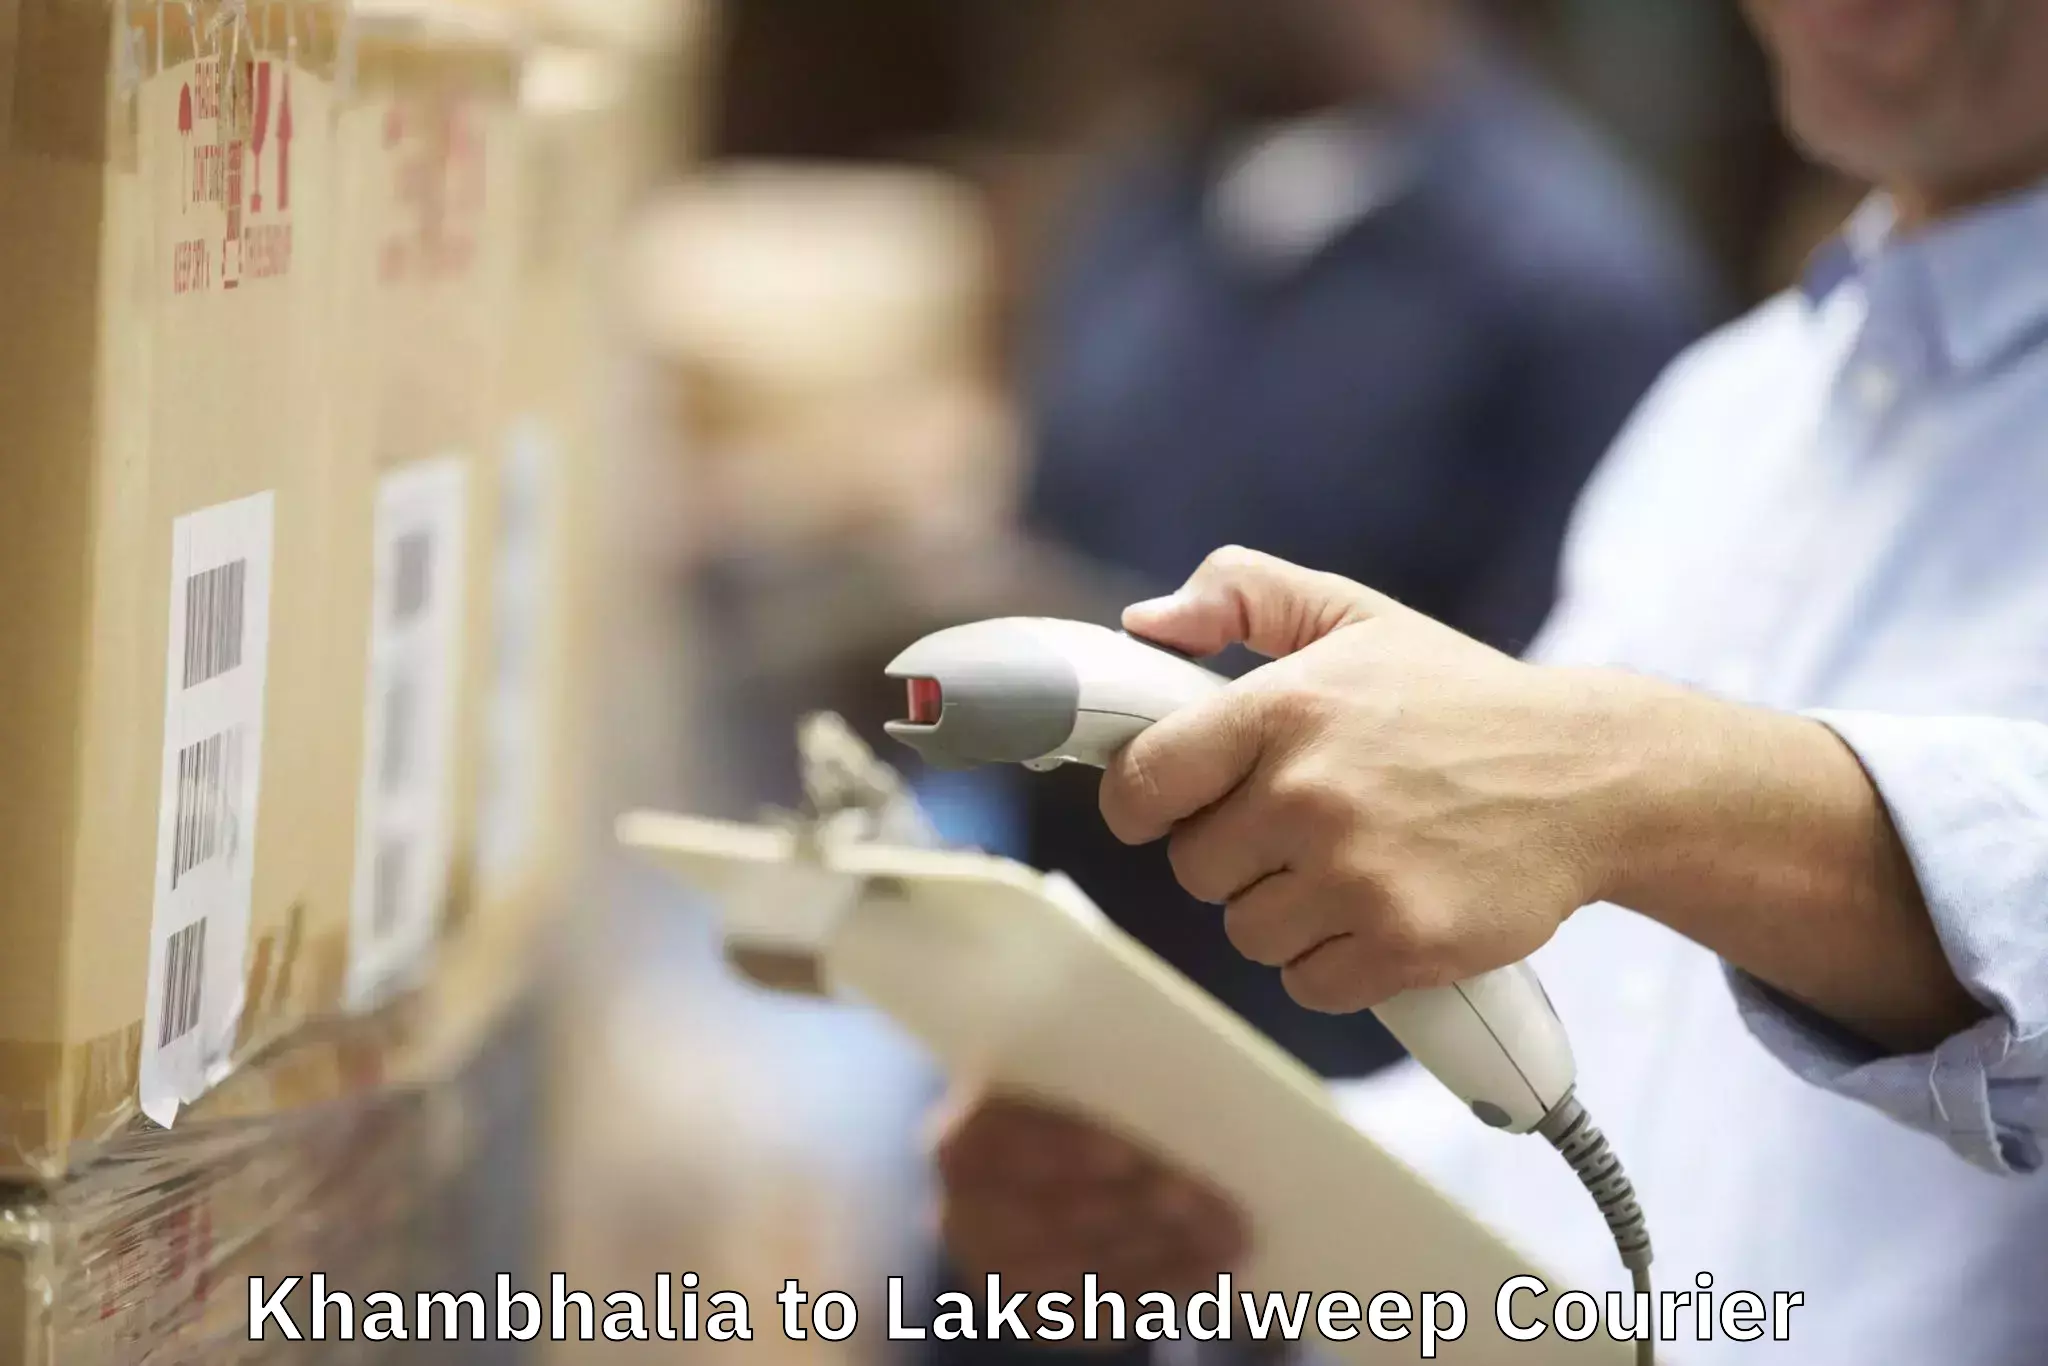 Furniture moving experts Khambhalia to Lakshadweep